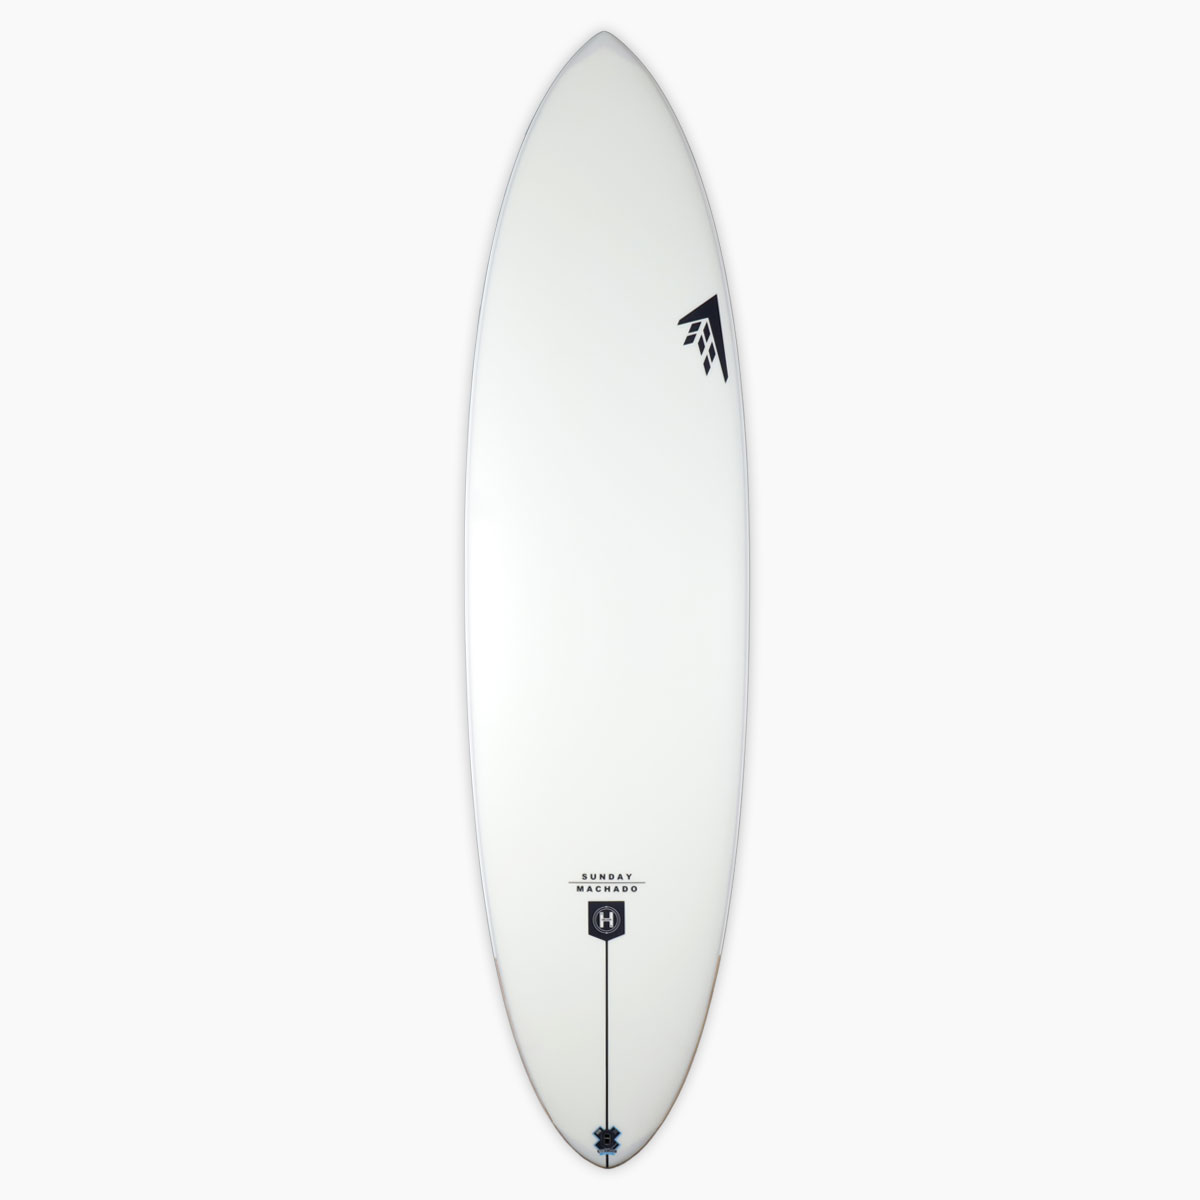 ファイヤーワイヤー サーフボード ロブマチャド サーフボード サンデー ツイン FIREWIRE surfboards × Rob Machado surfboards  SUNDAY TWIN 6'4'' ニューモデル ミッドレングス 即納